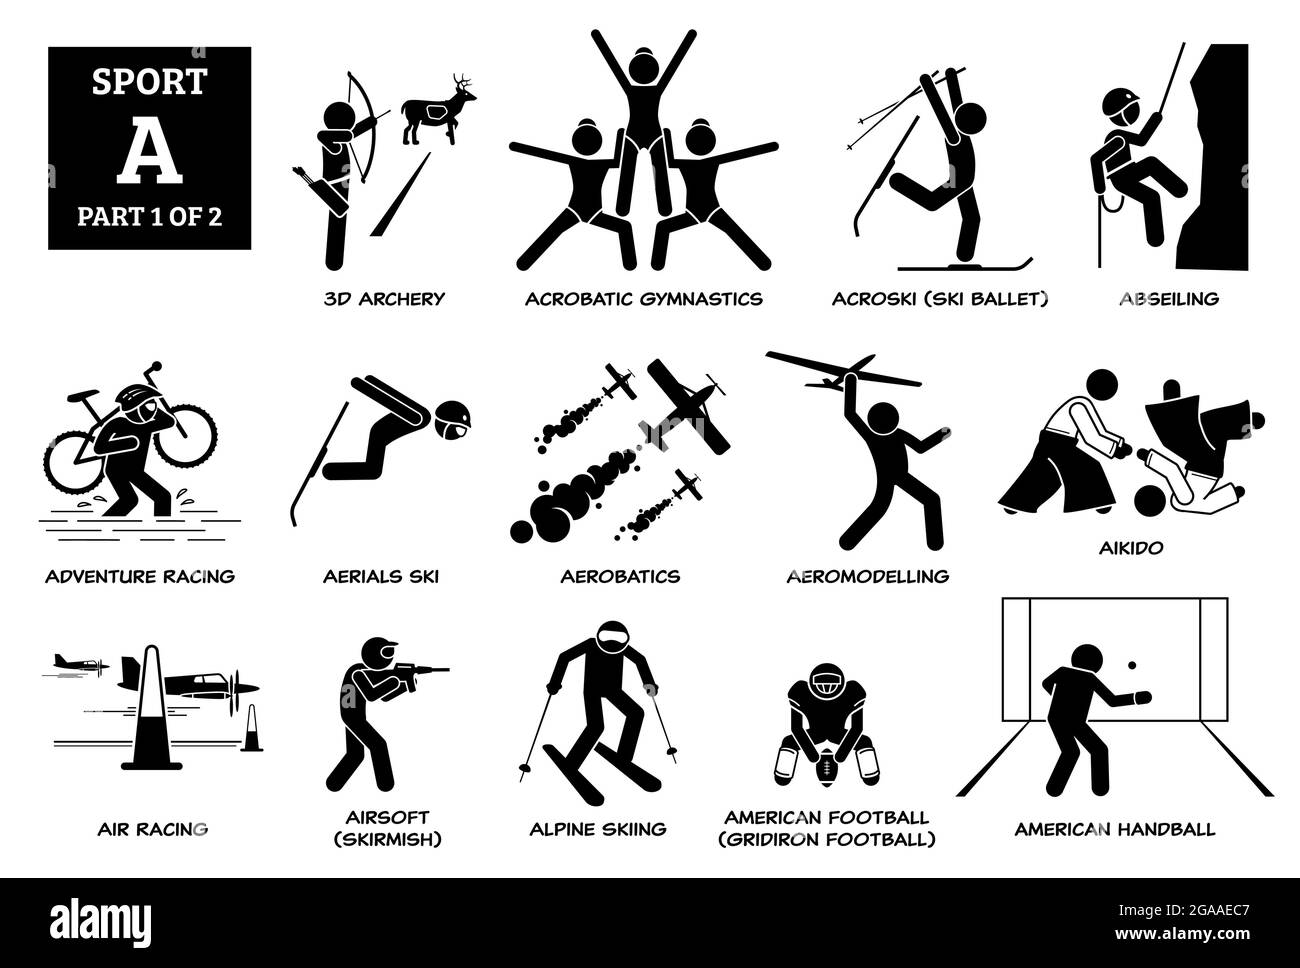 Jeux de sport alphabet UN vecteur icônes pictogramme. Tir à l'arc 3D, gymnastique acrobatique, acroski, descente en rappel, courses d'aventure, antennes ski, aikido, airsoft, a Illustration de Vecteur